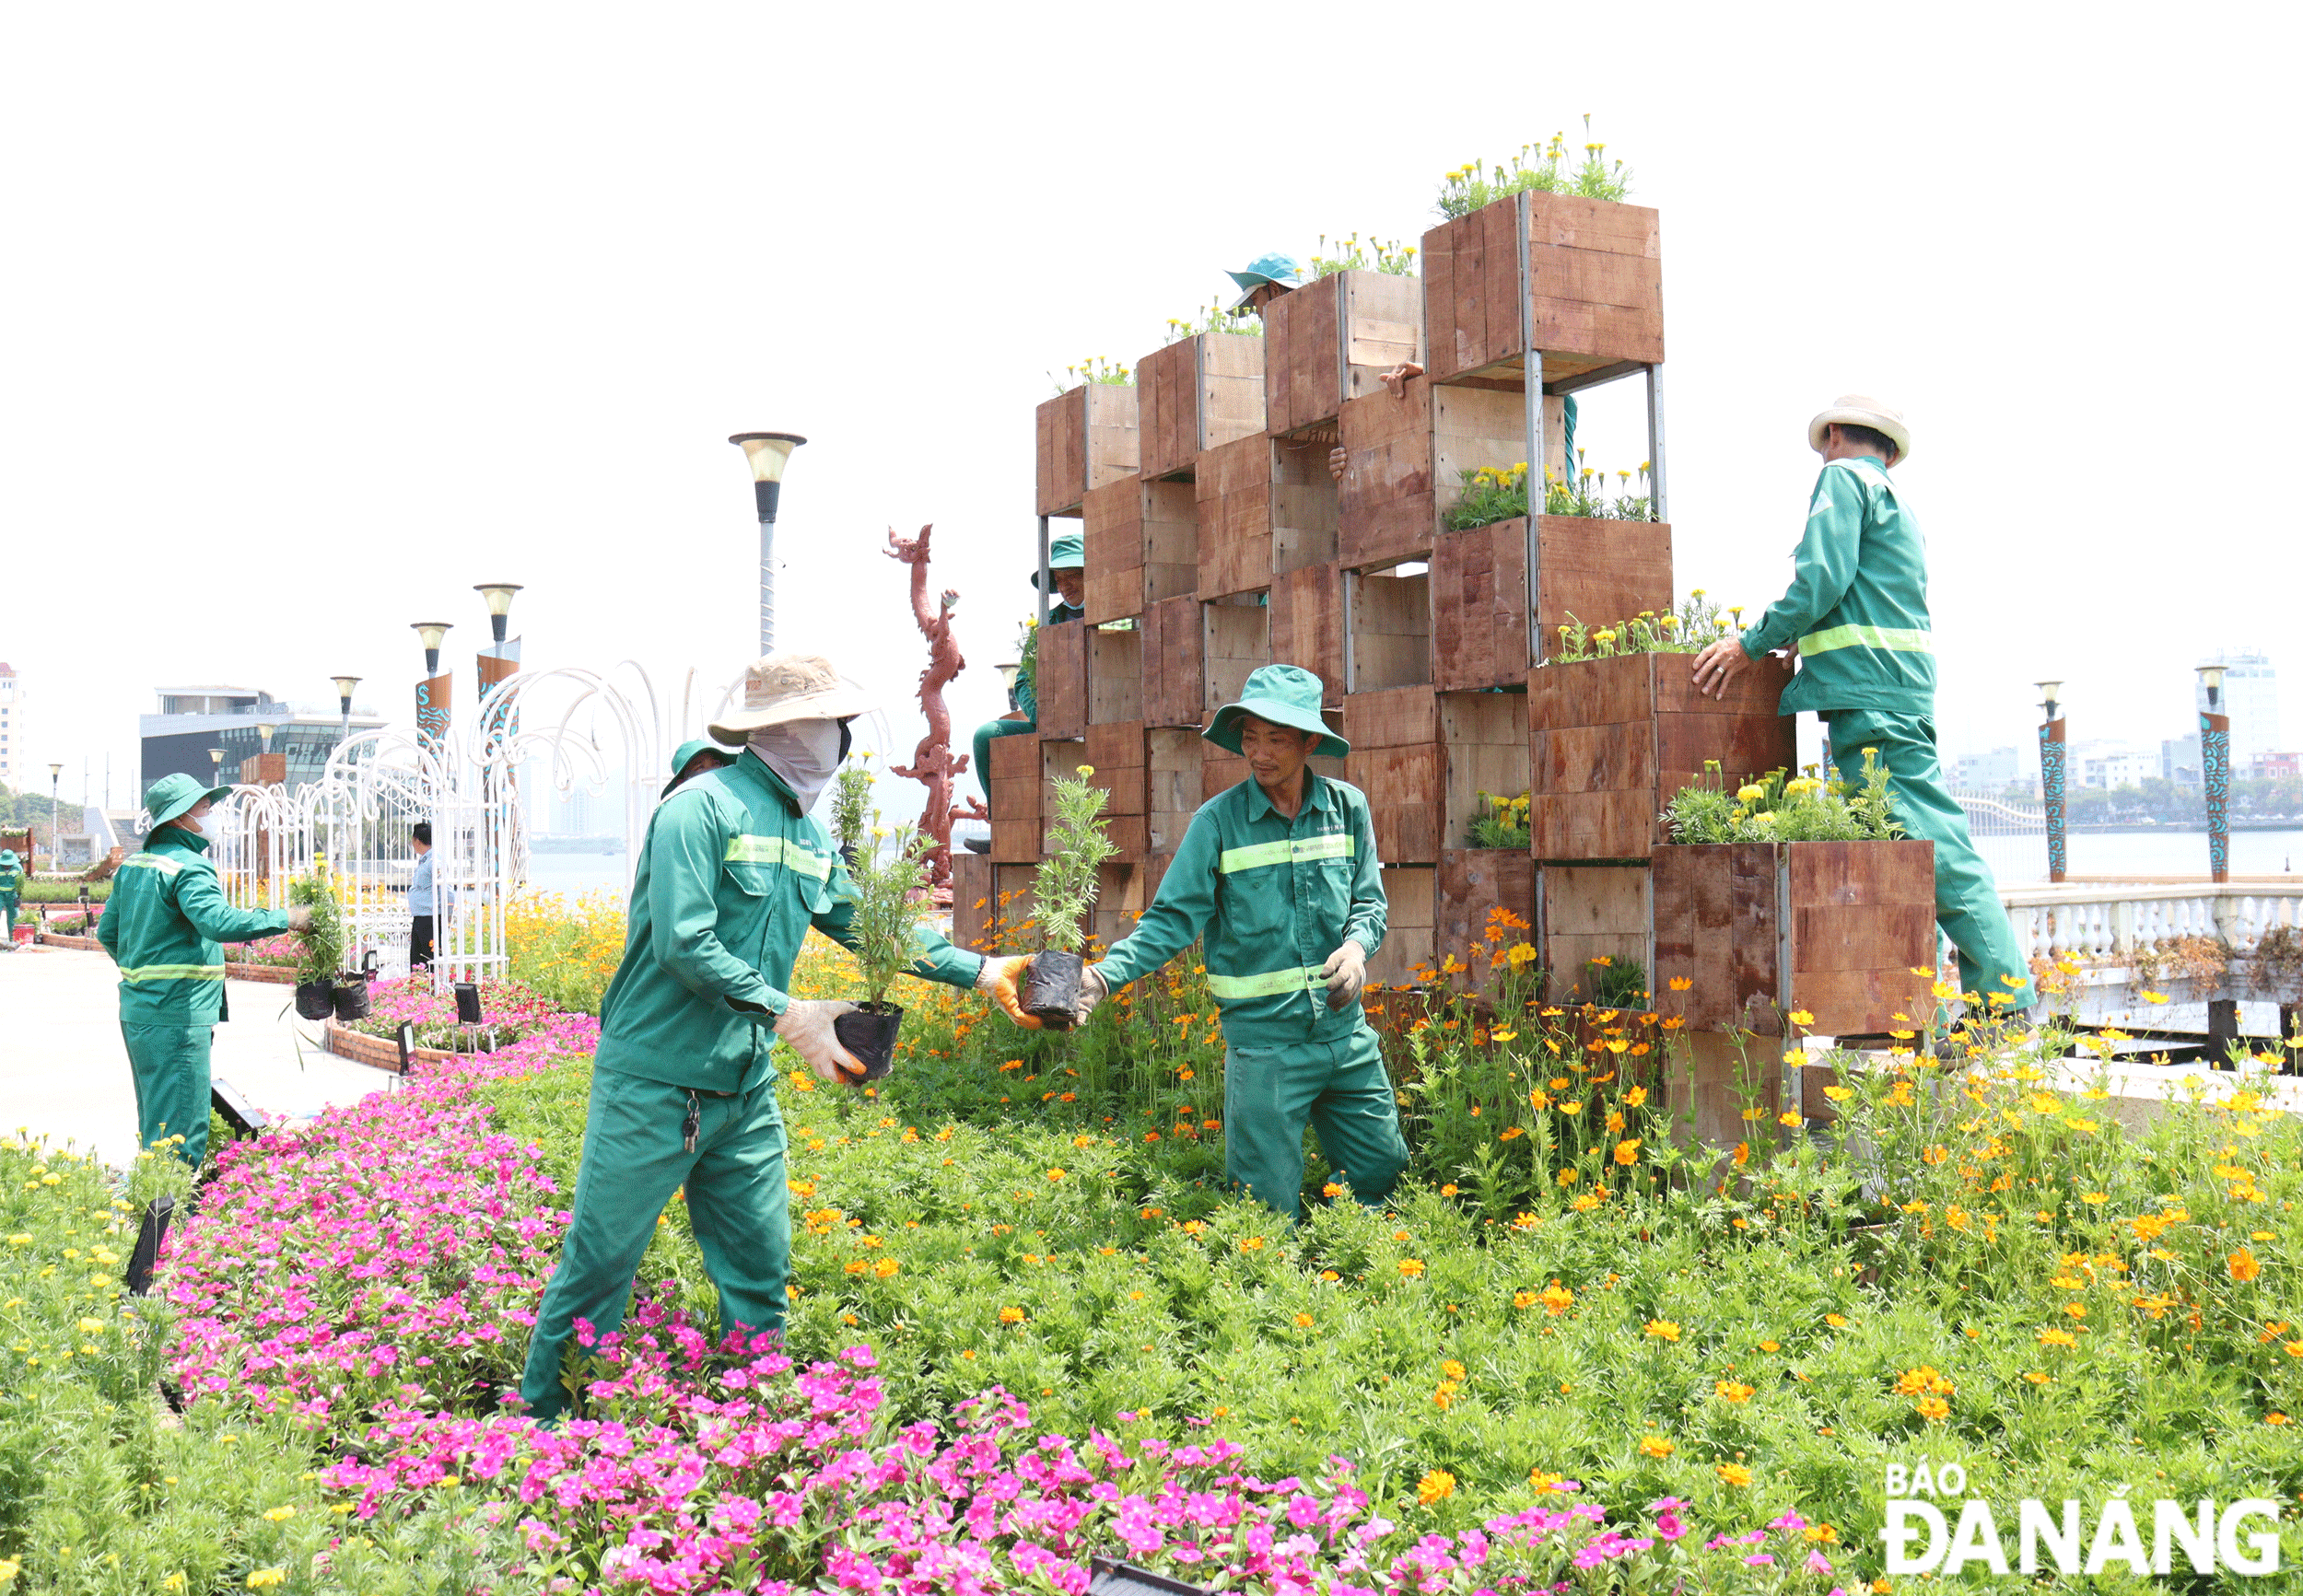 Trang trí 3 vườn hoa trên vỉa hè đường Bạch Đằng phục vụ dịp lễ và mùa du lịch hè